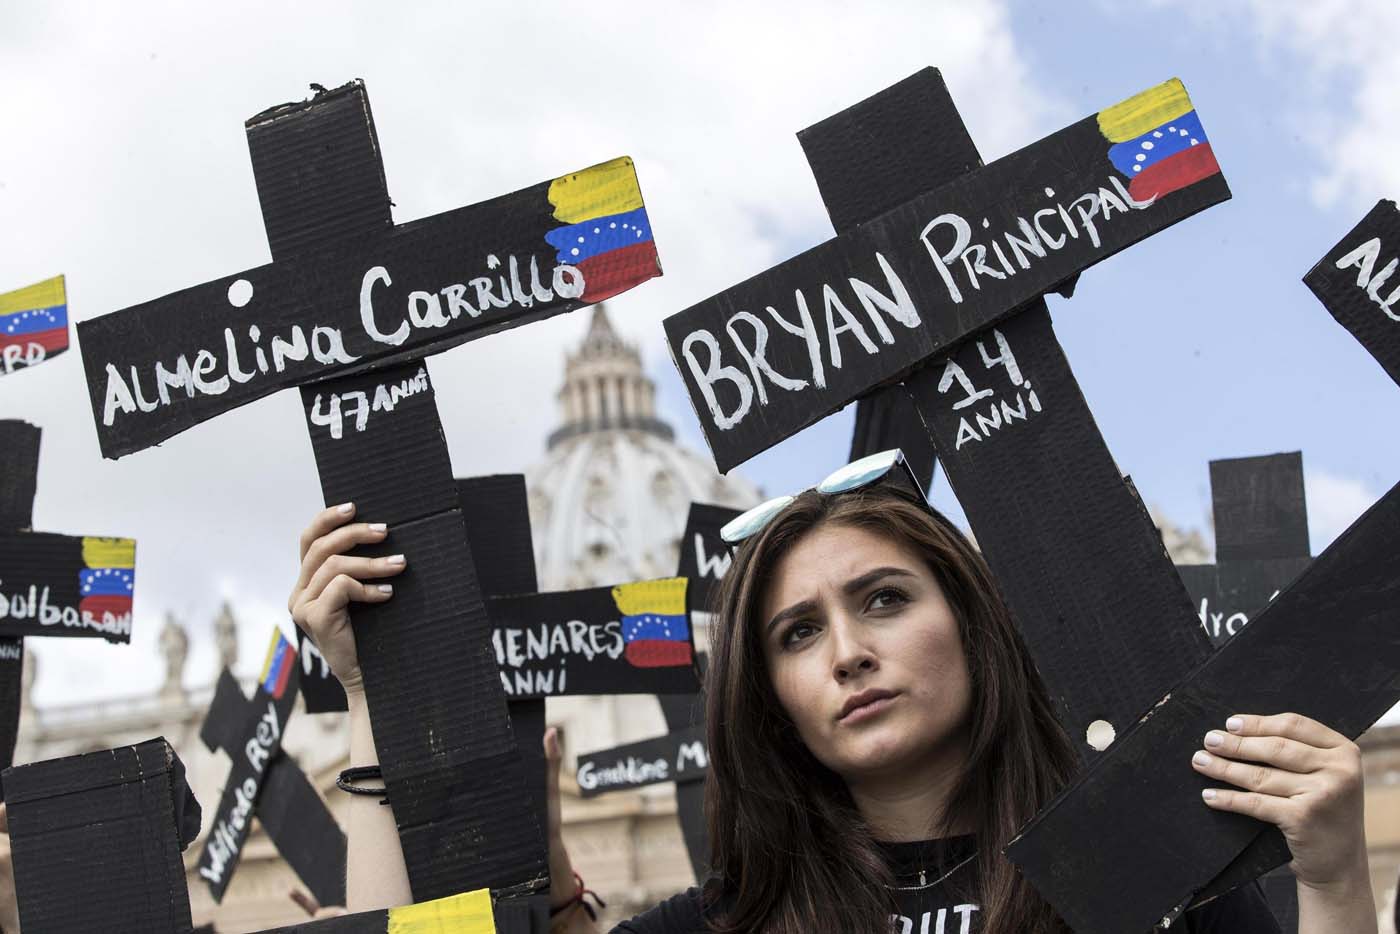 The Economist: Deje de ser blando con nuestro déspota, dijeron obispos venezolanos al Papa